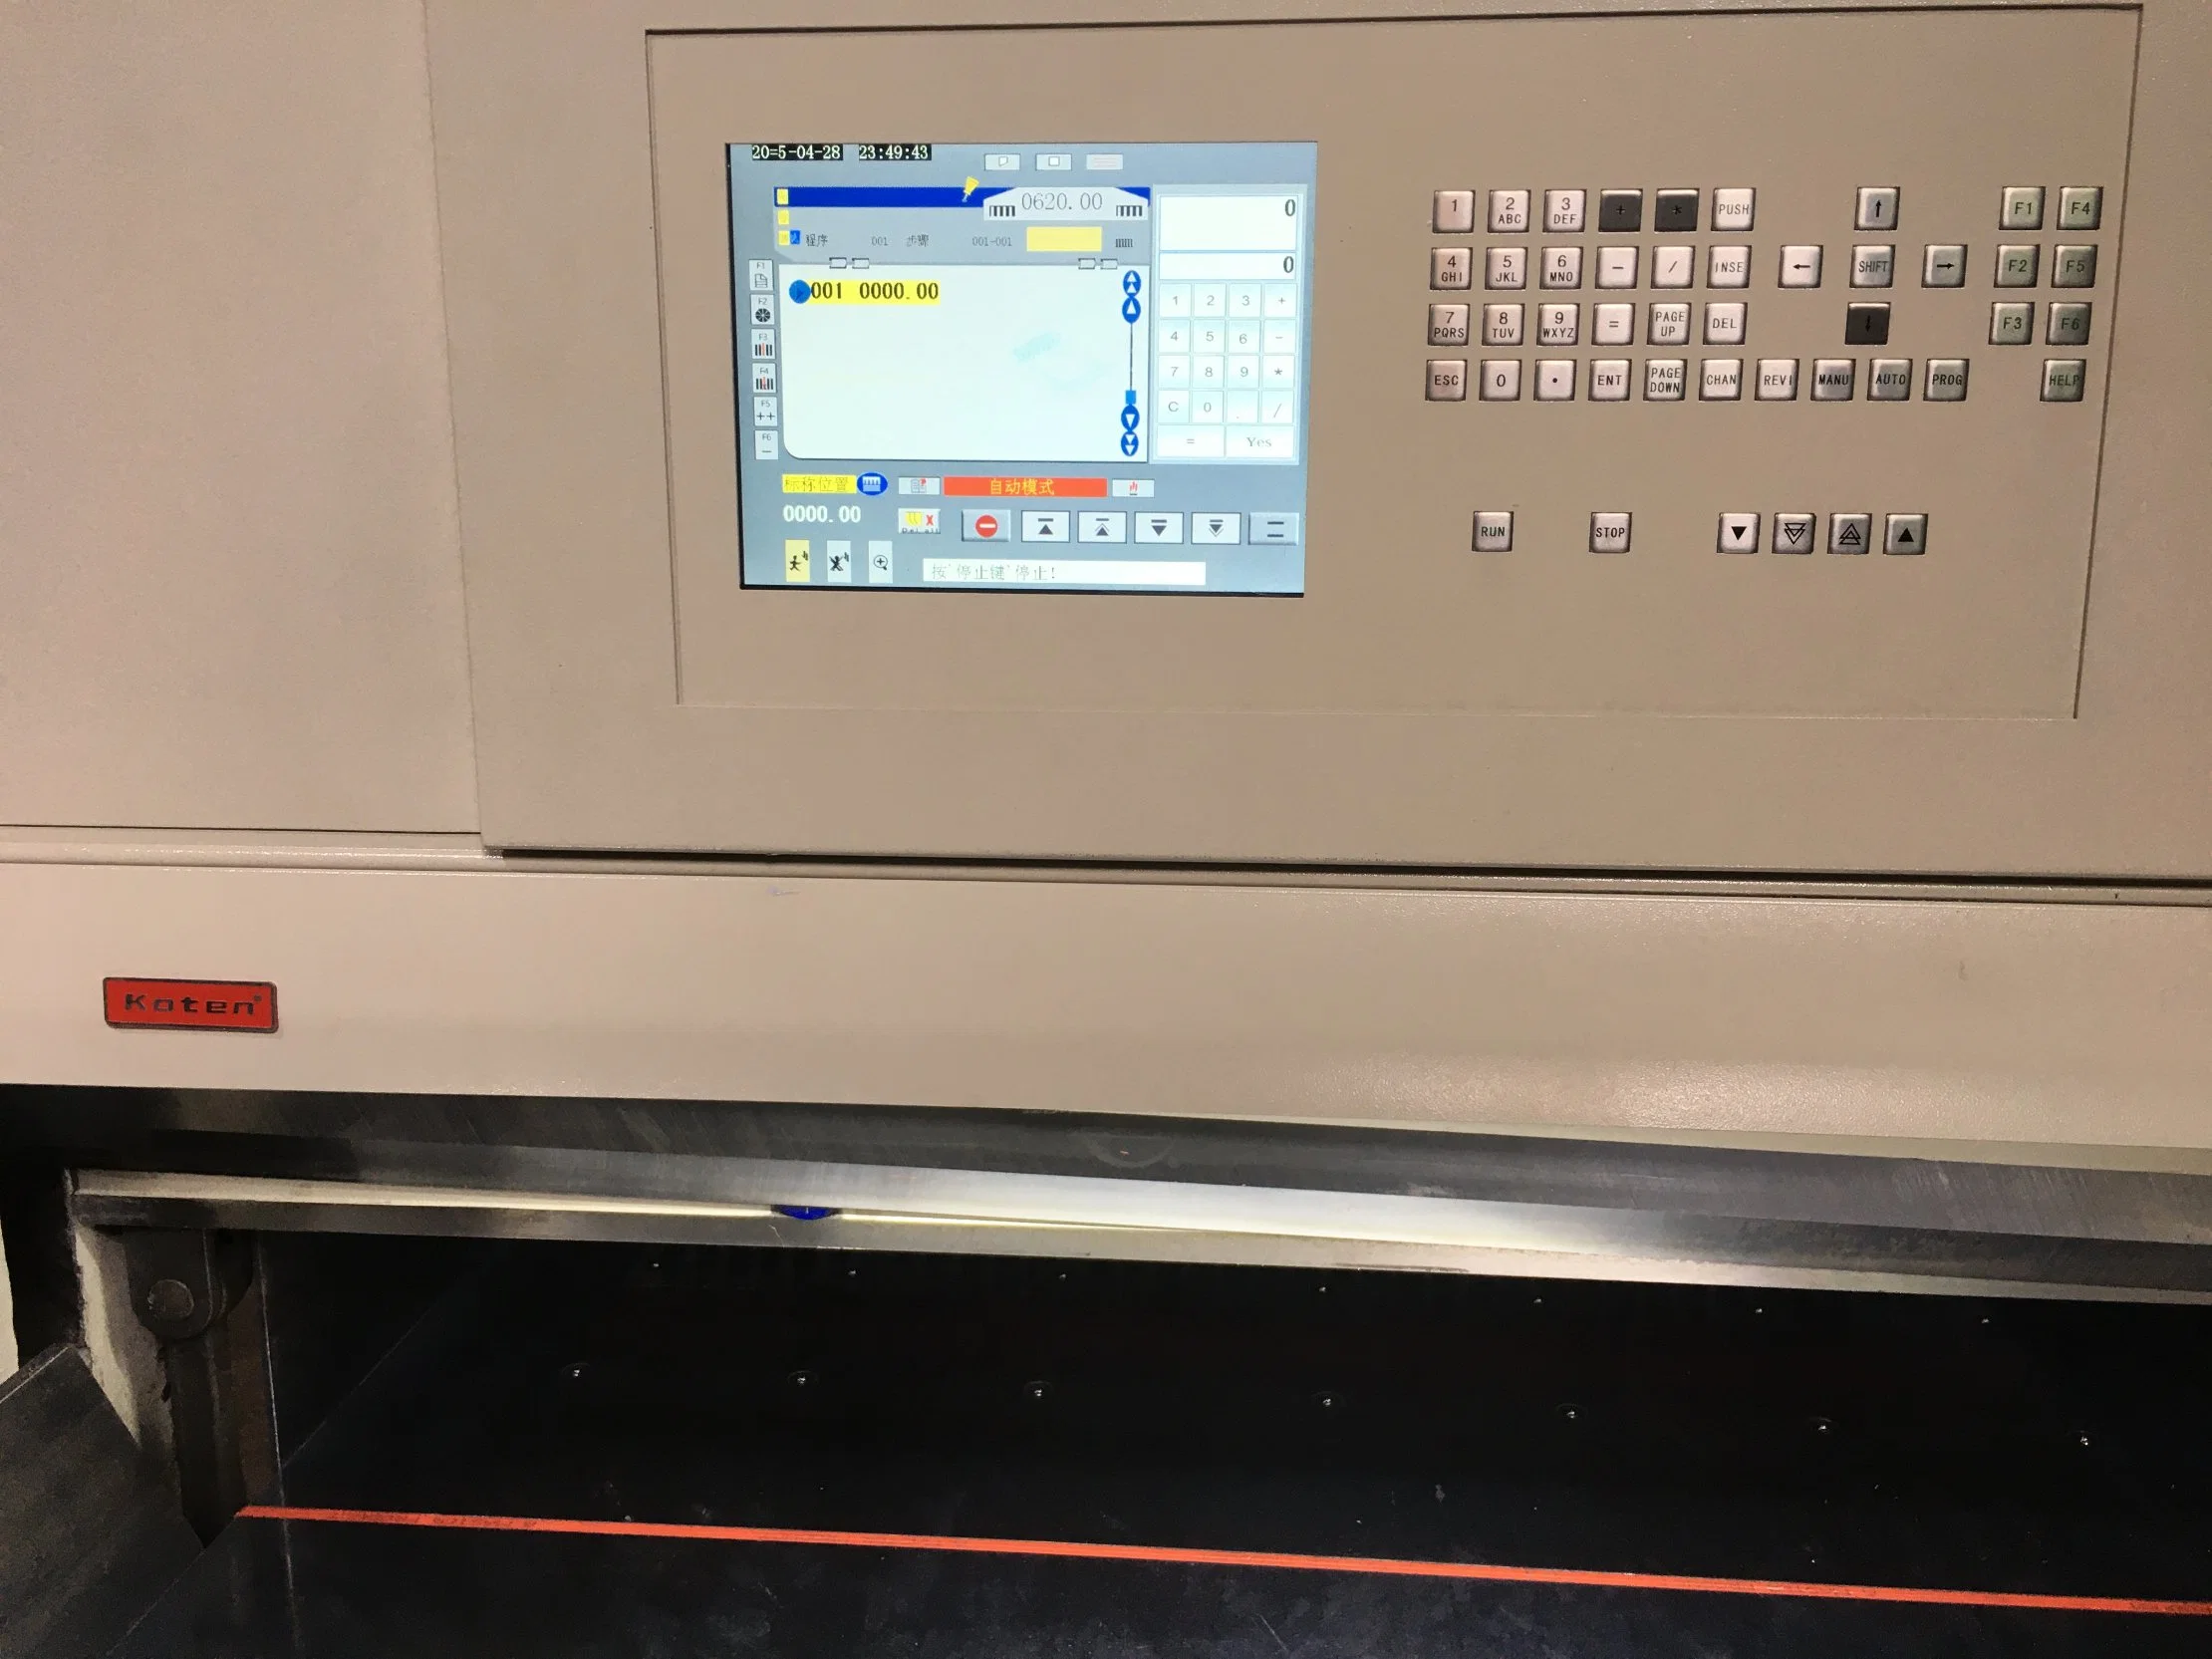 Автоматический цифровой машины для резки бумаги Printshop